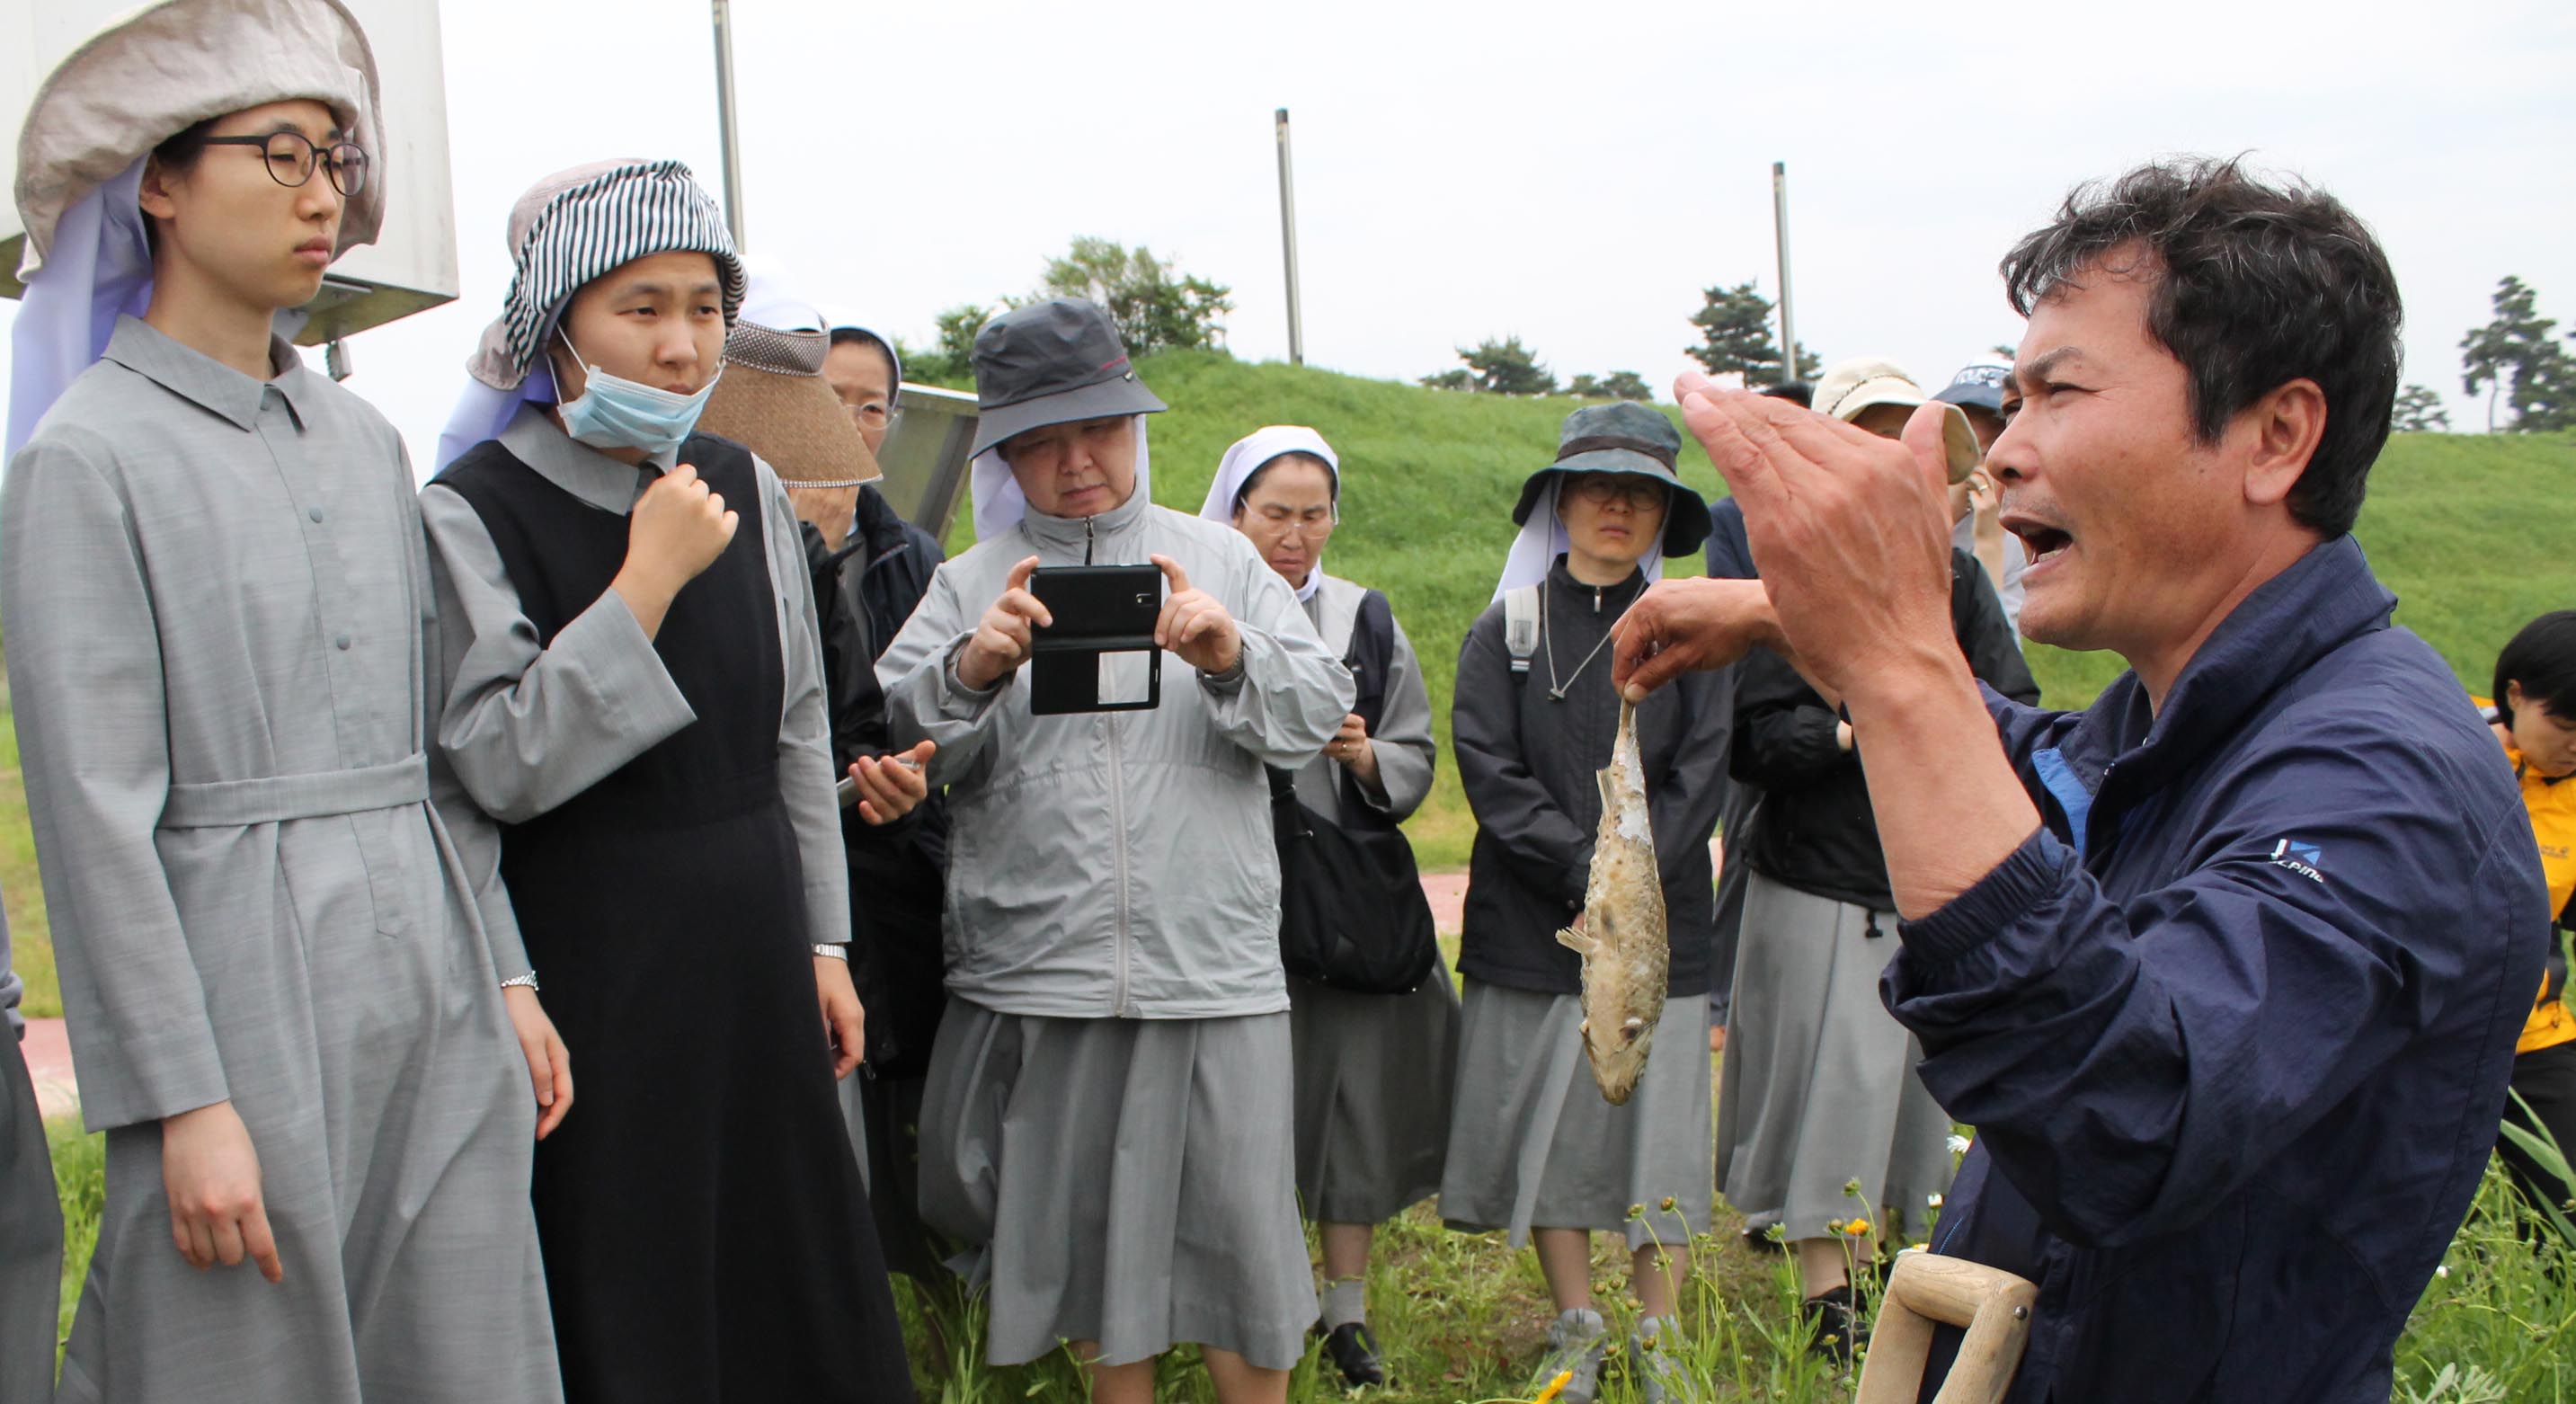 지난 12일 성가소비녀회 수녀들이 금강을 찾았다. 김종술 기자가 현장특강을 진행하고 있는 모습